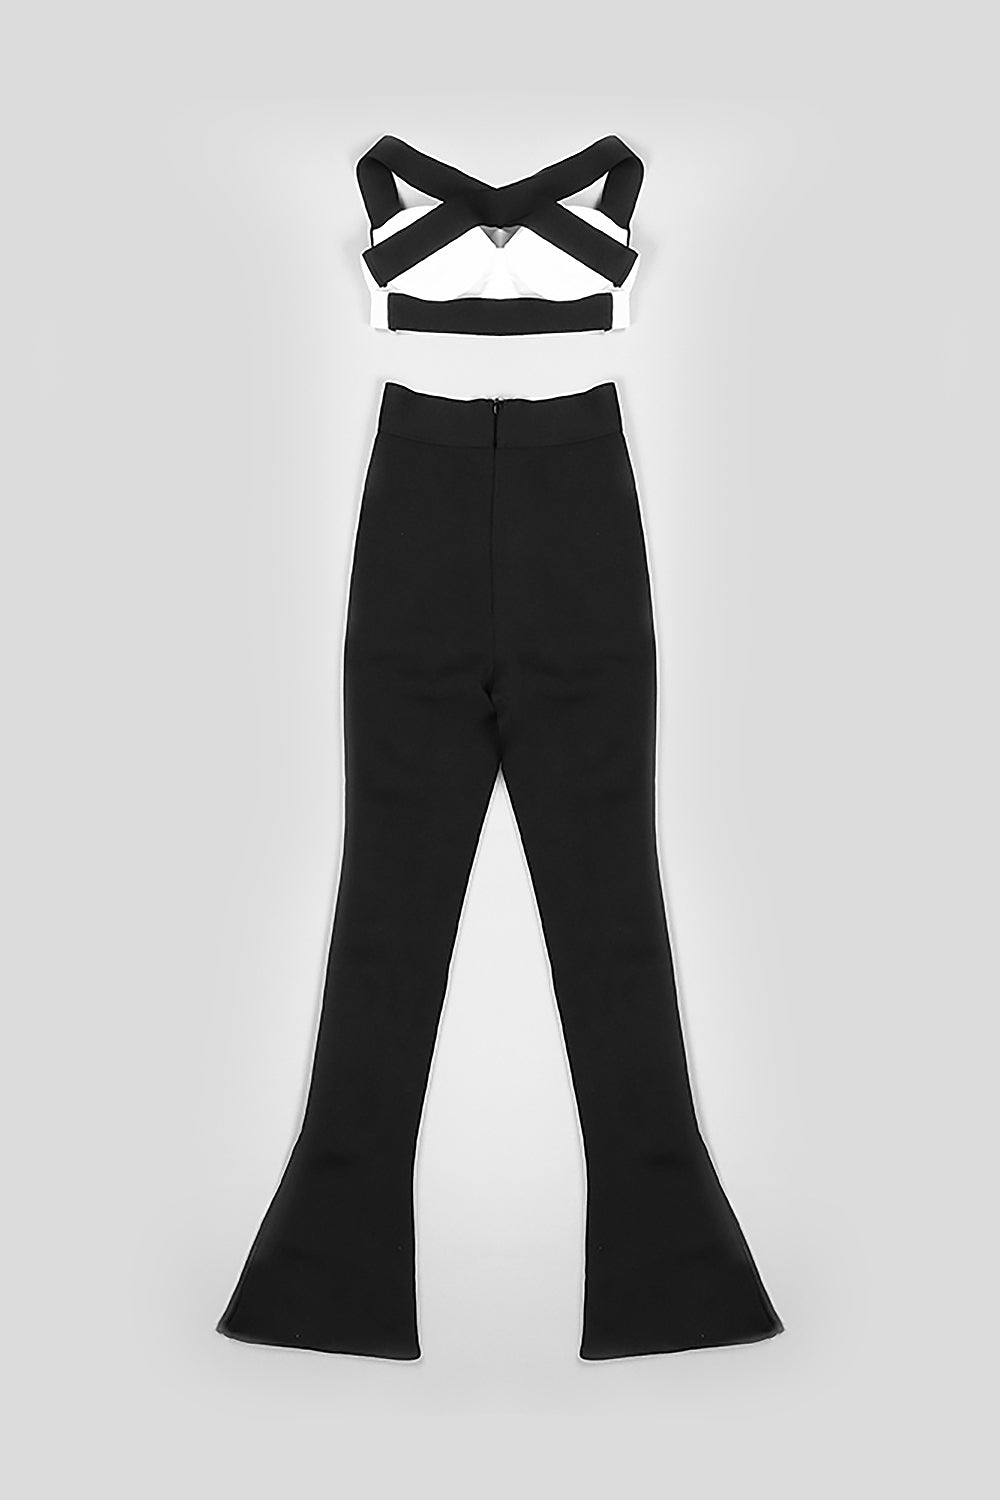 Conjunto de dos piezas con pantalones ajustados negros y tirantes cruzados con camisola blanca